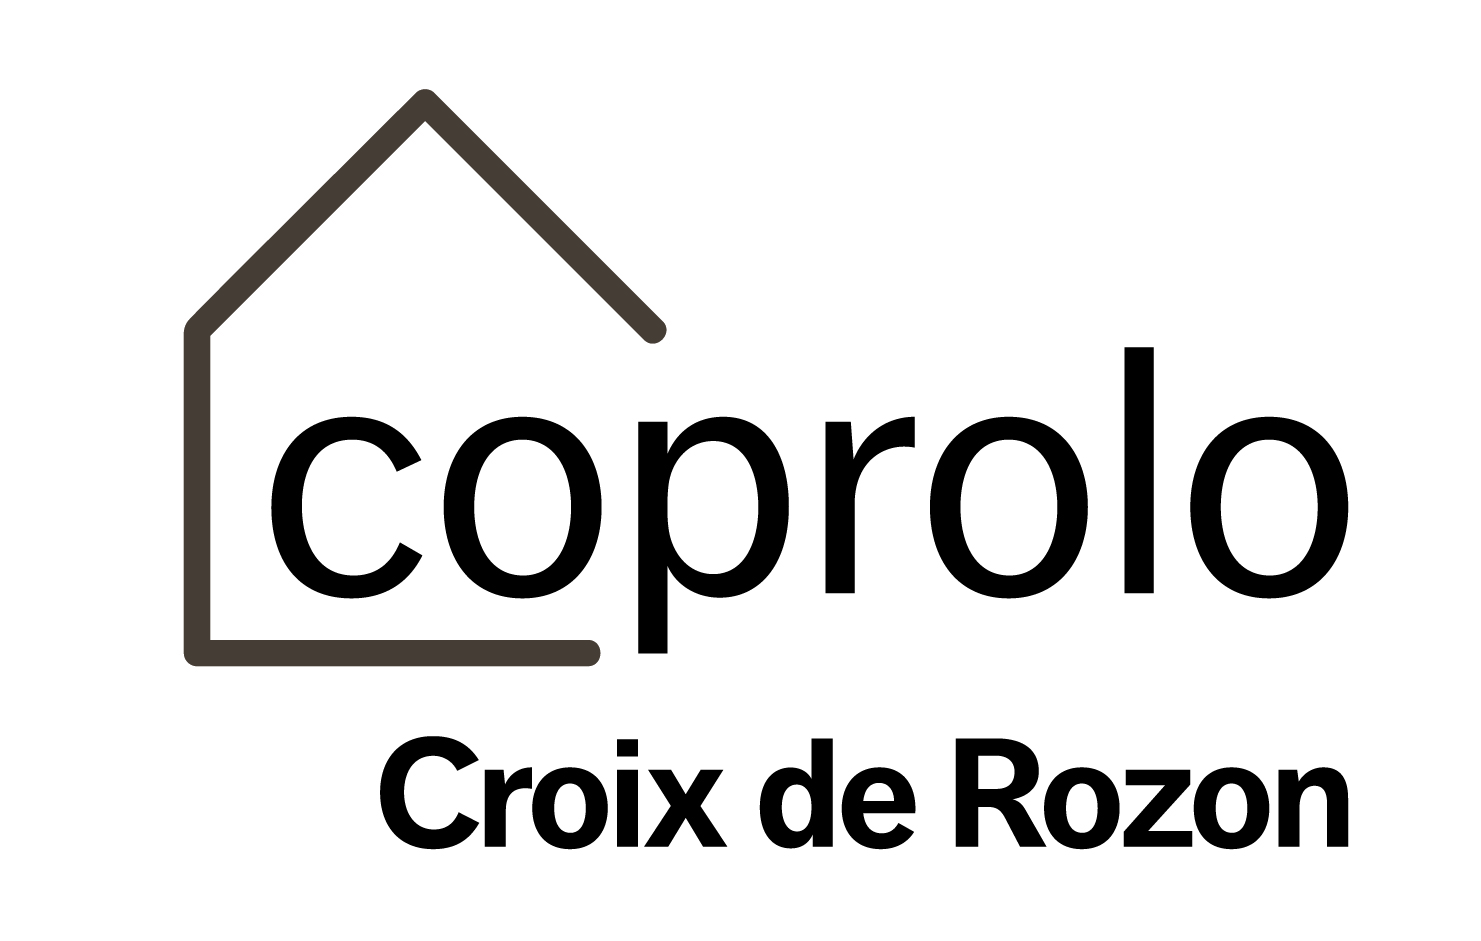 Coprolo CroixdeRozon